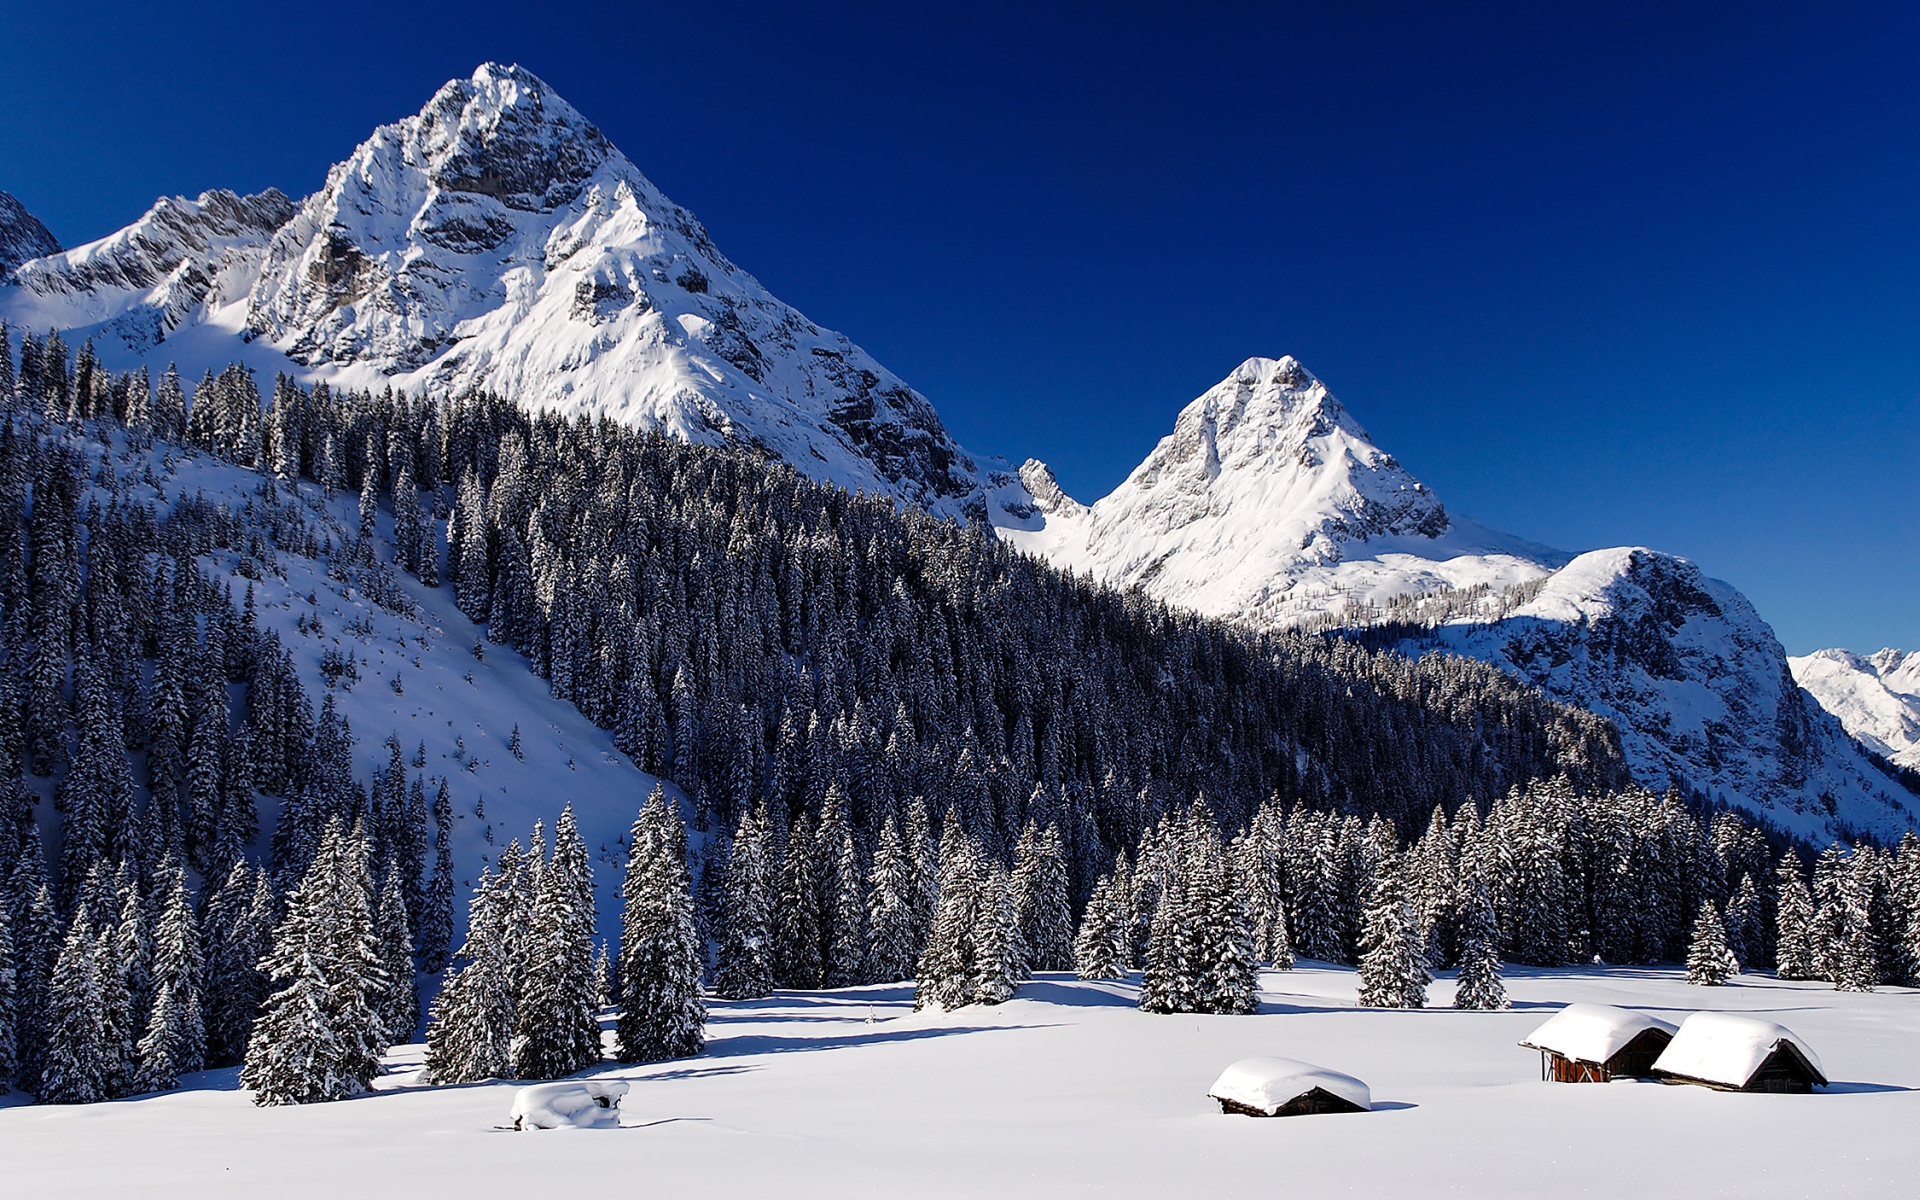 mountains, landscapes, snow - desktop wallpaper